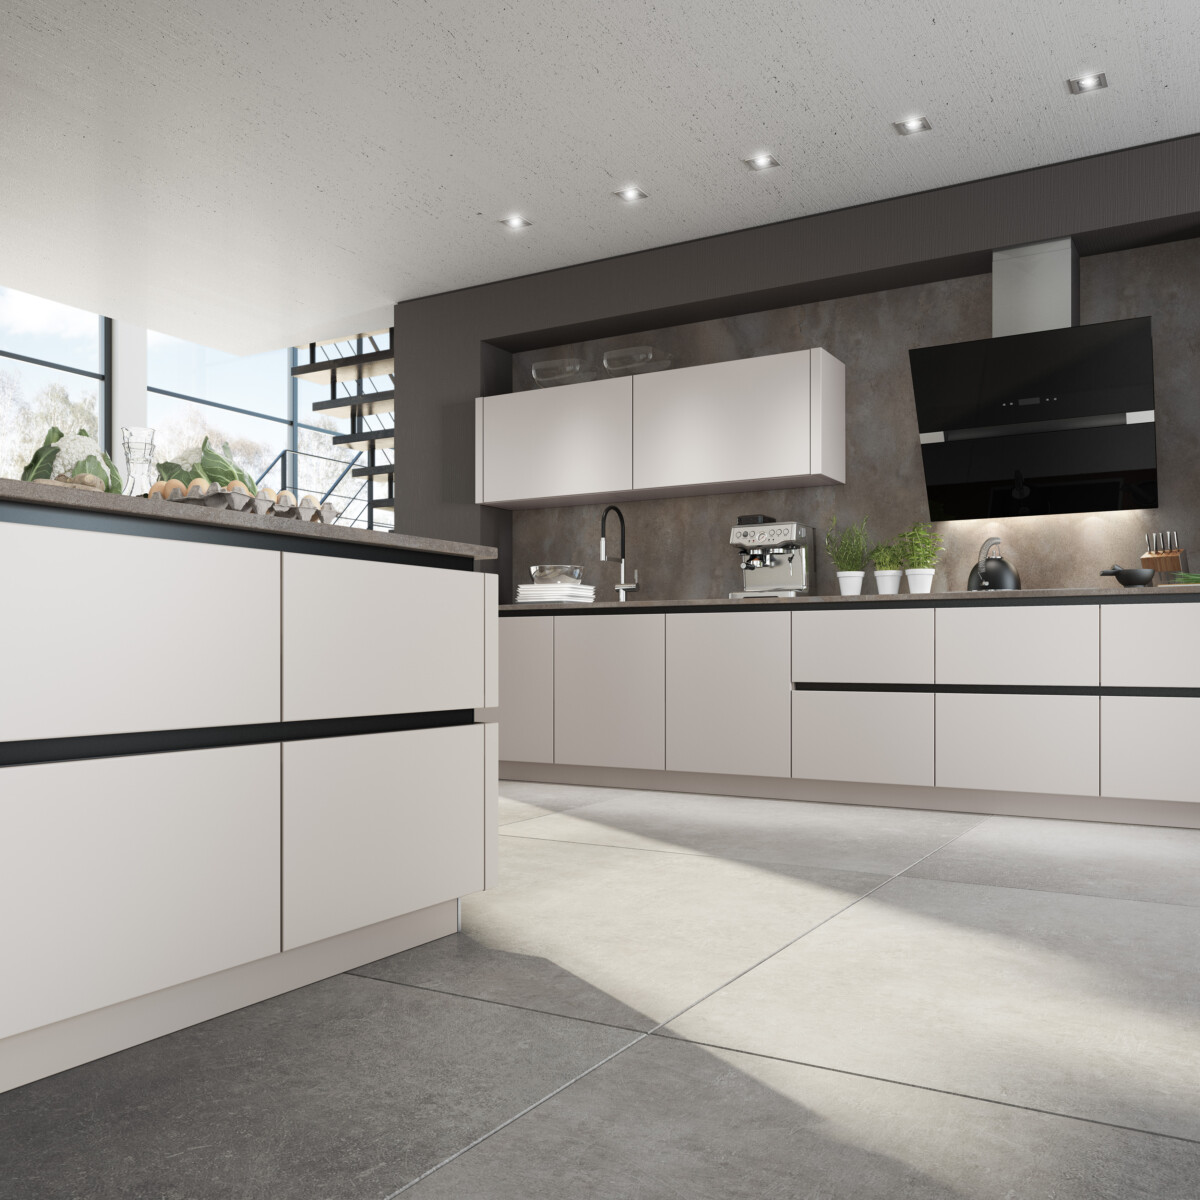 Willkommen zu Hause - Ihre neue Einbauküche von Küchen-Kay aus Kiel